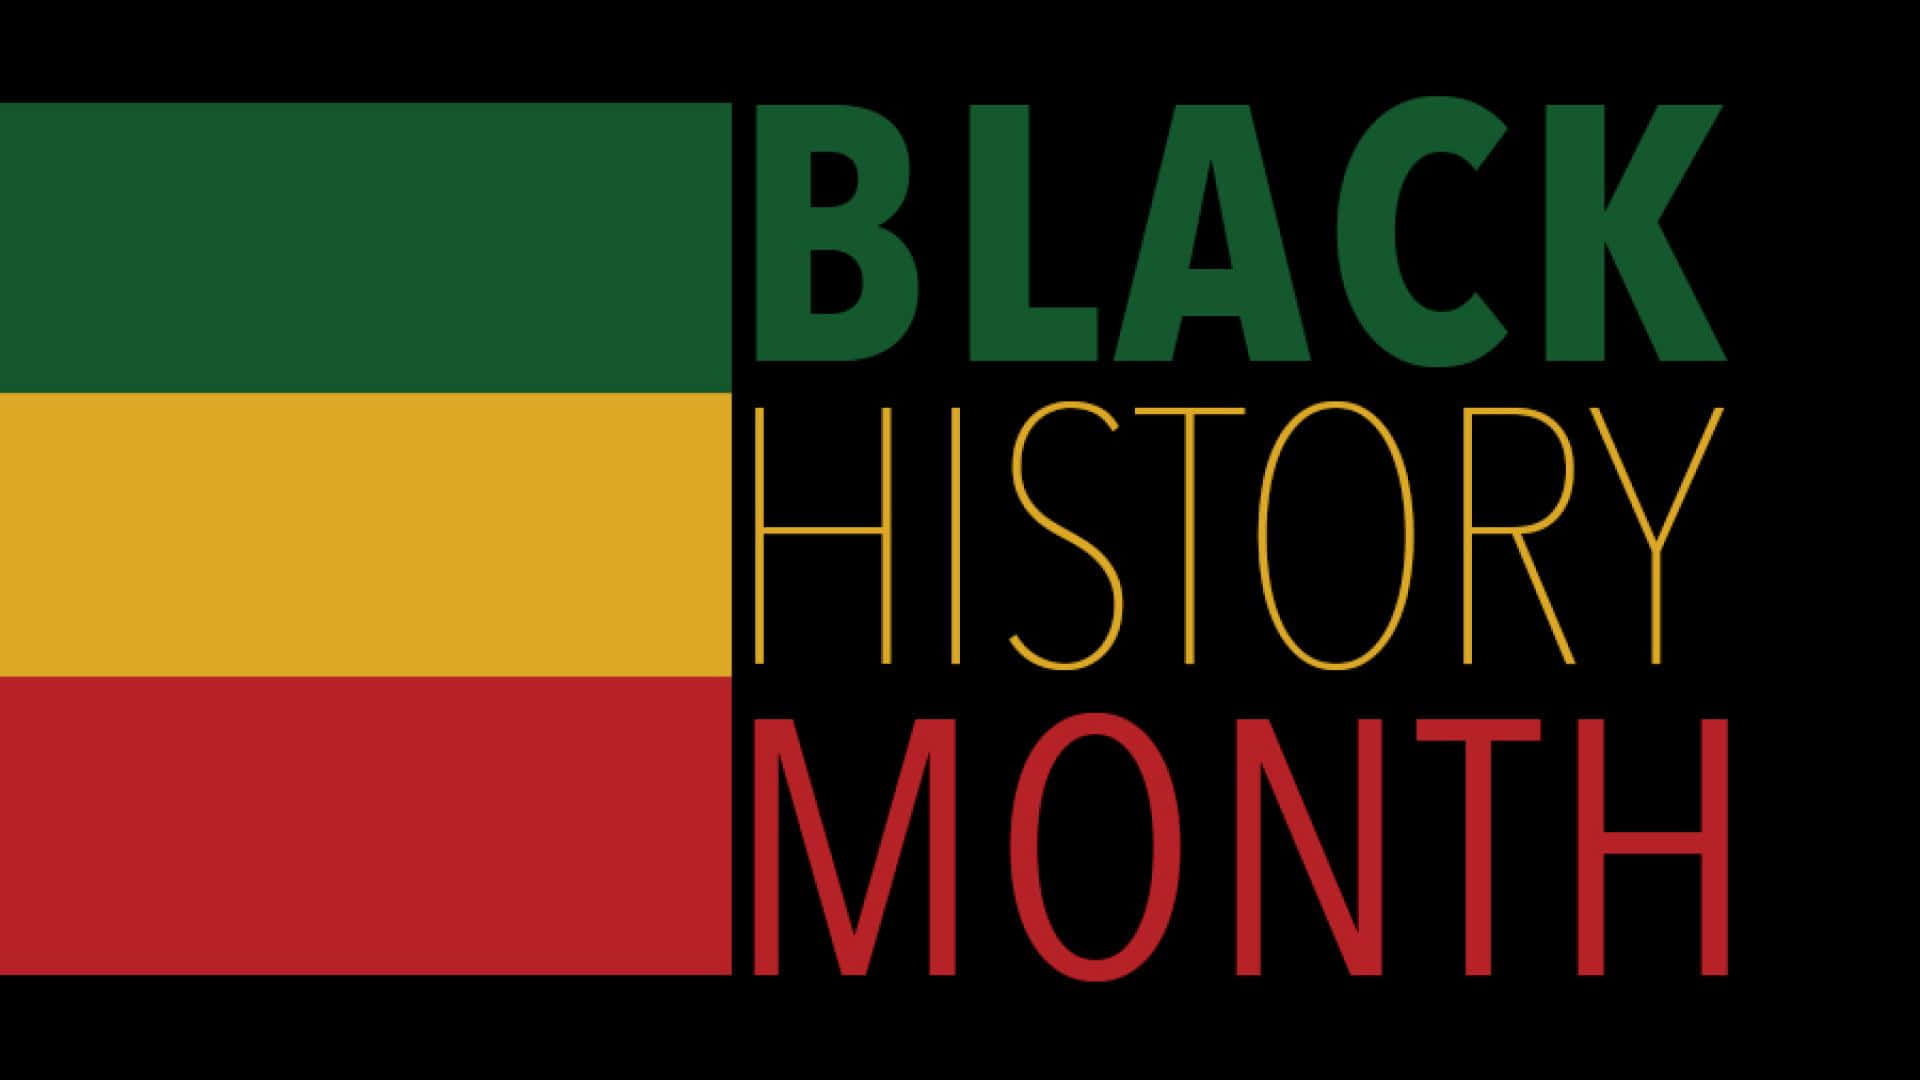 Typografiemit Äthiopischen Farben Hintergrund Für Den Monat Der Schwarzen Geschichte.